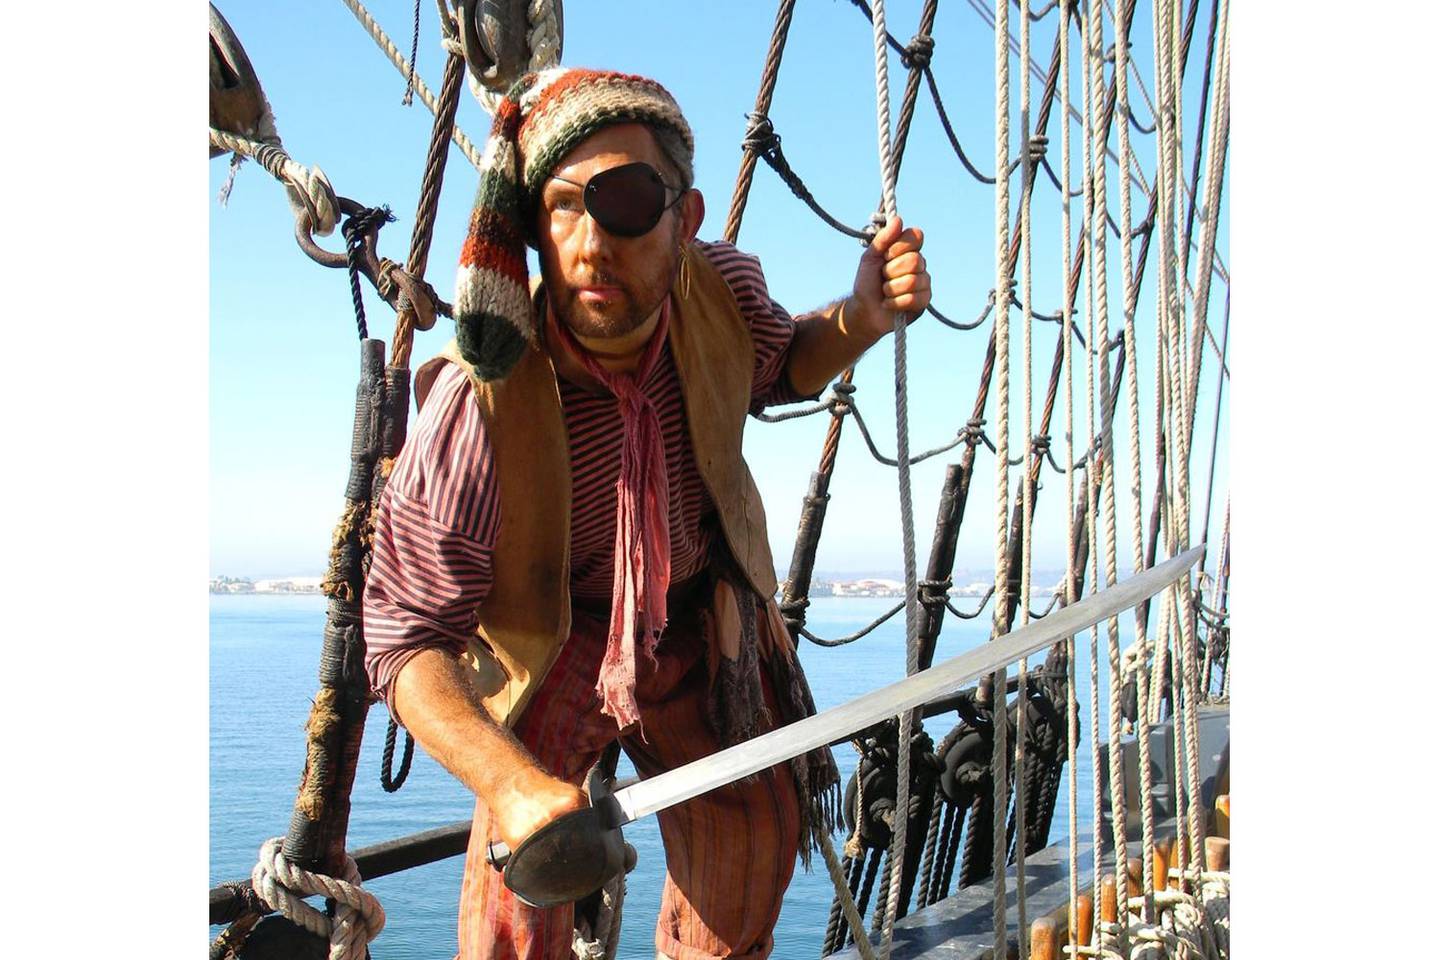 ¡A bordo! Una nueva aventura pirata se presentará el próximo 18 de mayo en el Museo Marítimo de San Diego.